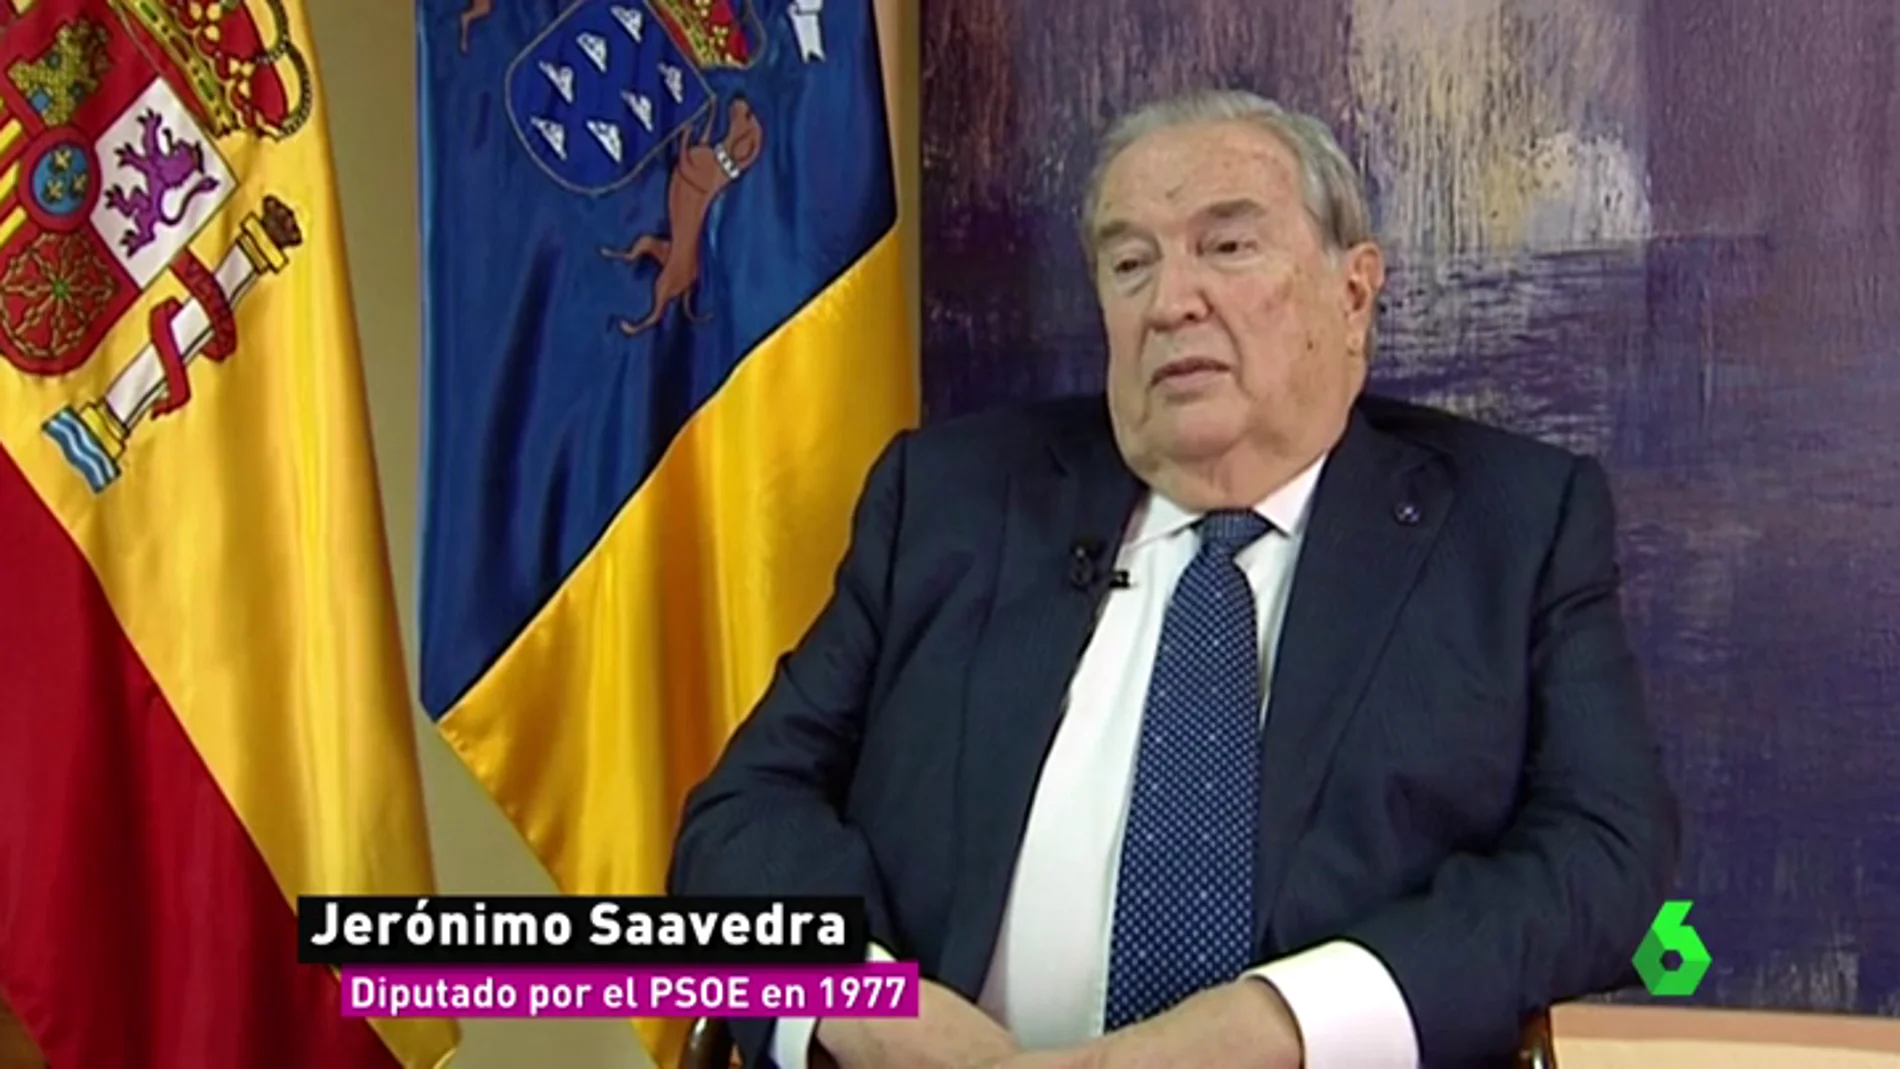 Jerónimo Saavedra, el primer diputado homosexual del PSOE